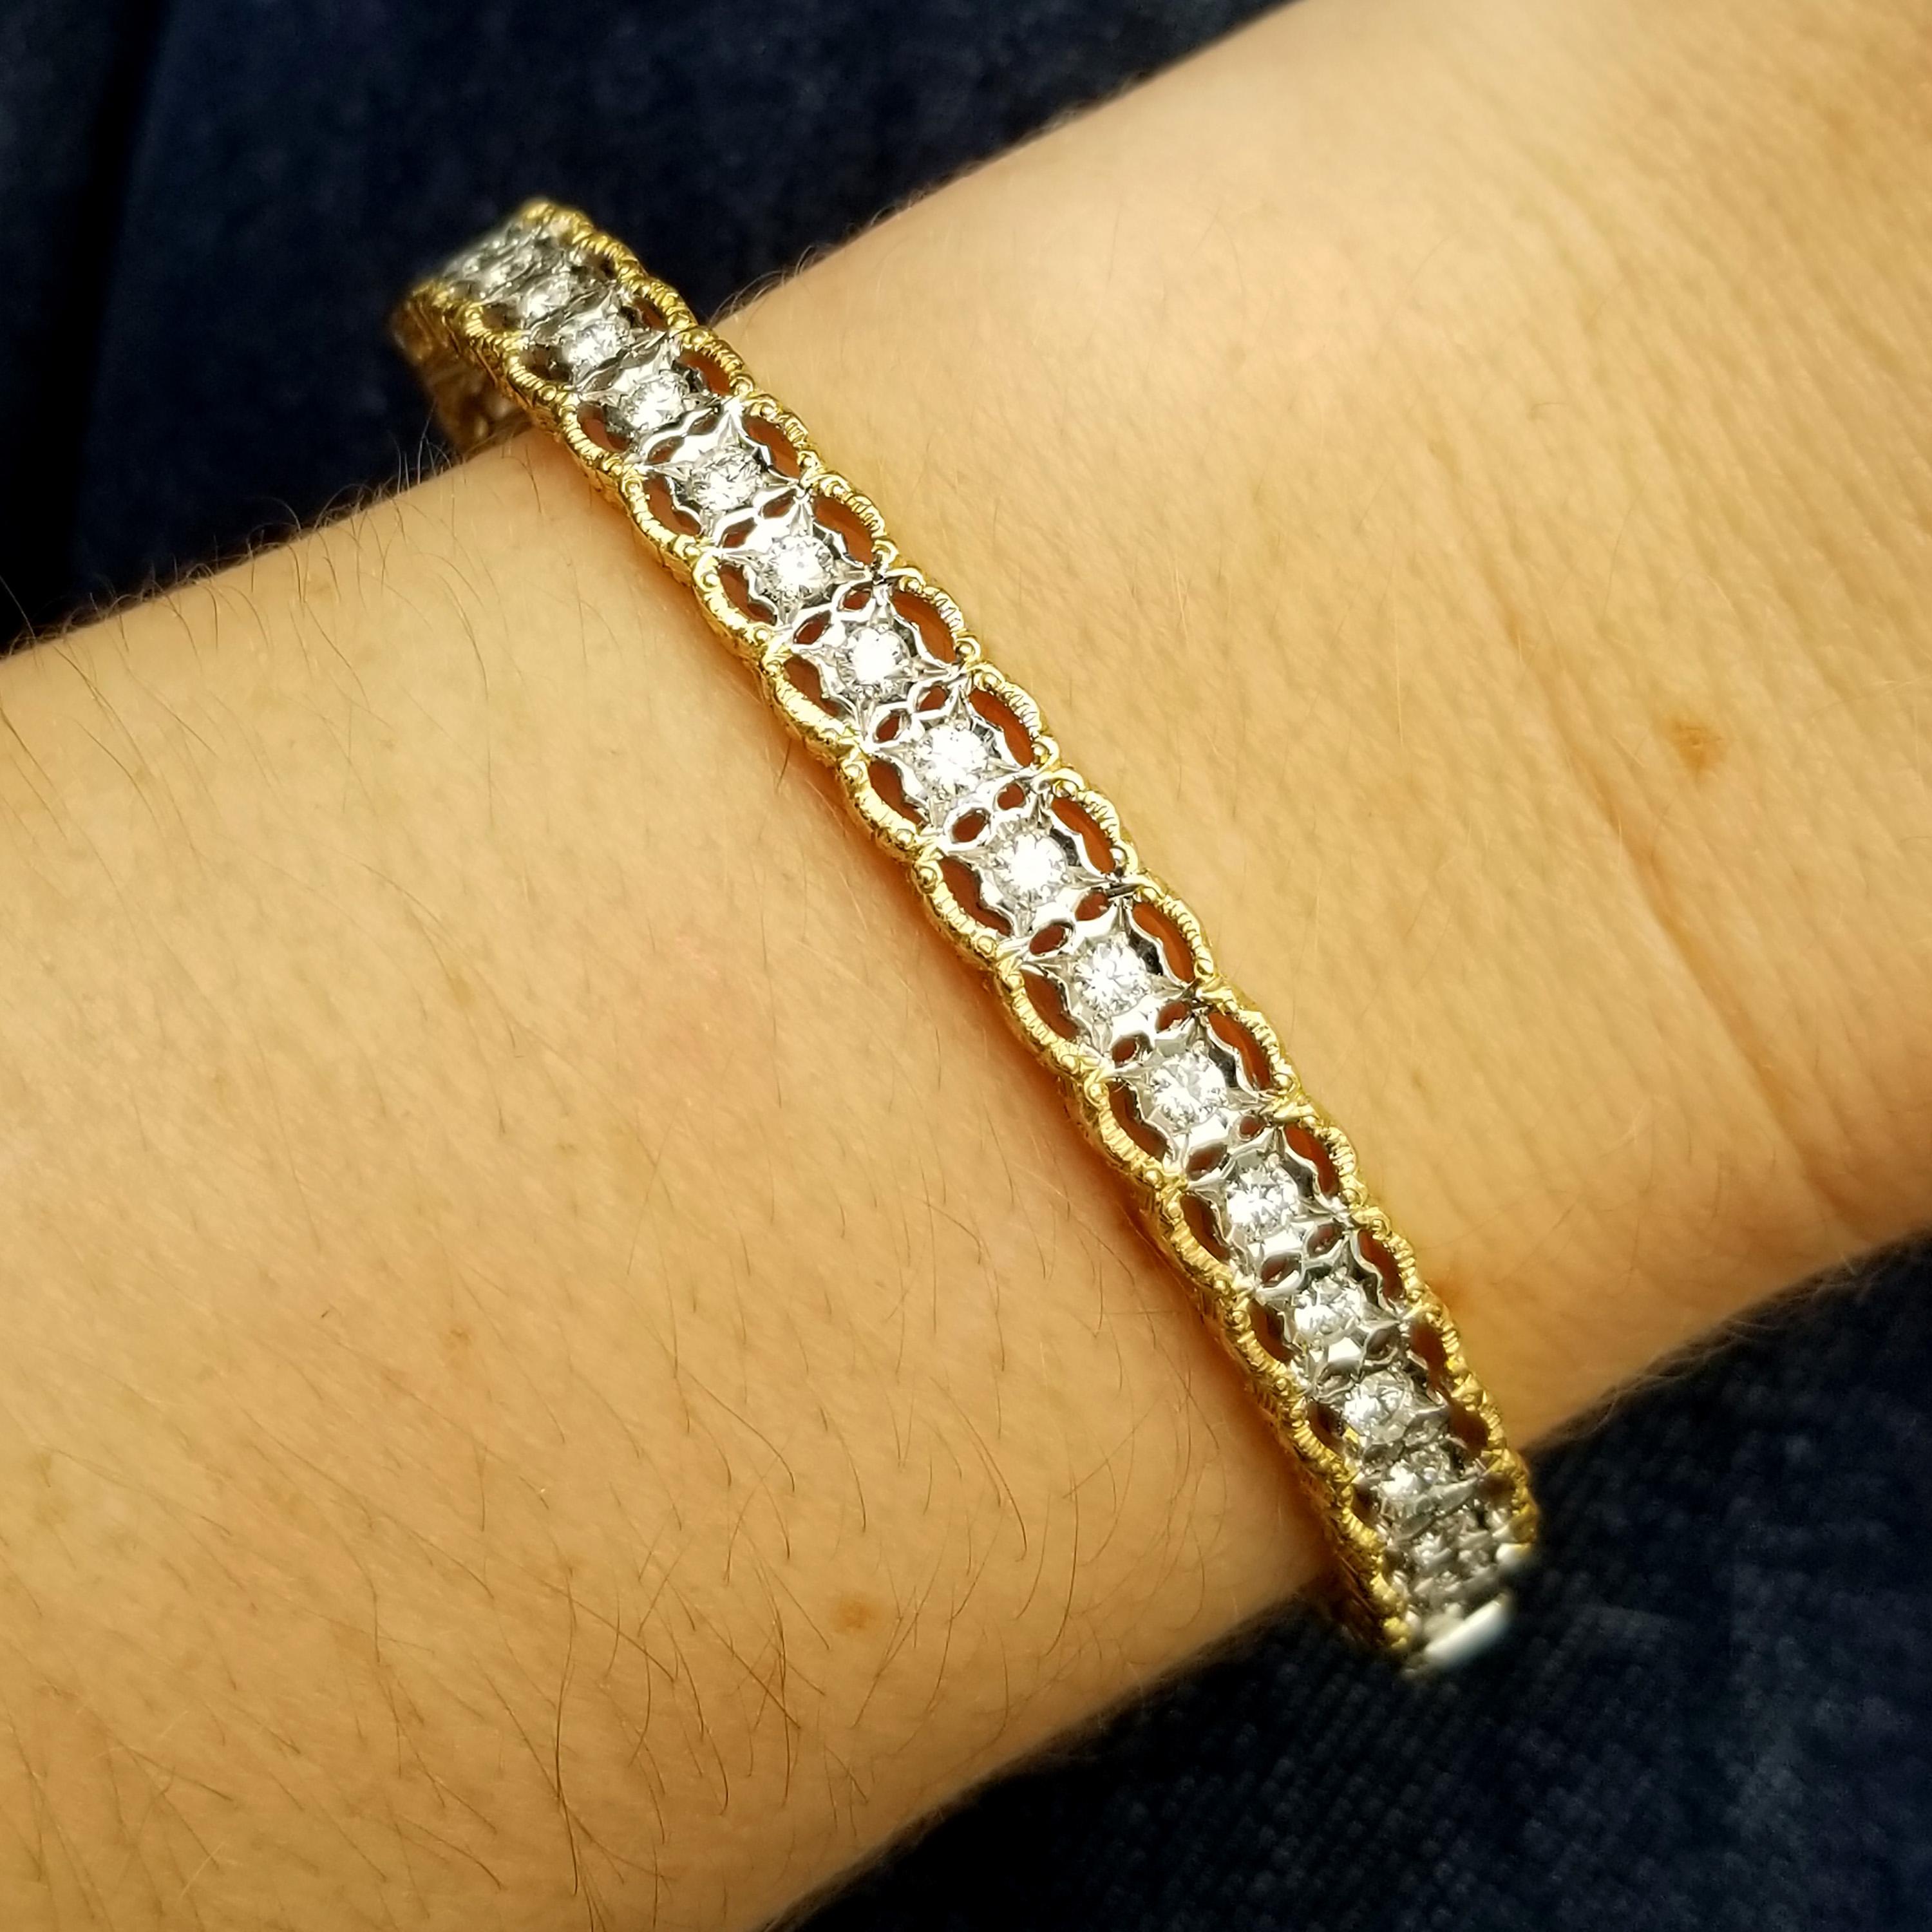 La dentelle festonnée du bracelet Stefania est une magnifique expression de l'approche florentine de la Renaissance : c'est la délicatesse complexe de la dentelle capturée à la perfection dans l'or et les diamants.

La forme ovale de ce bracelet